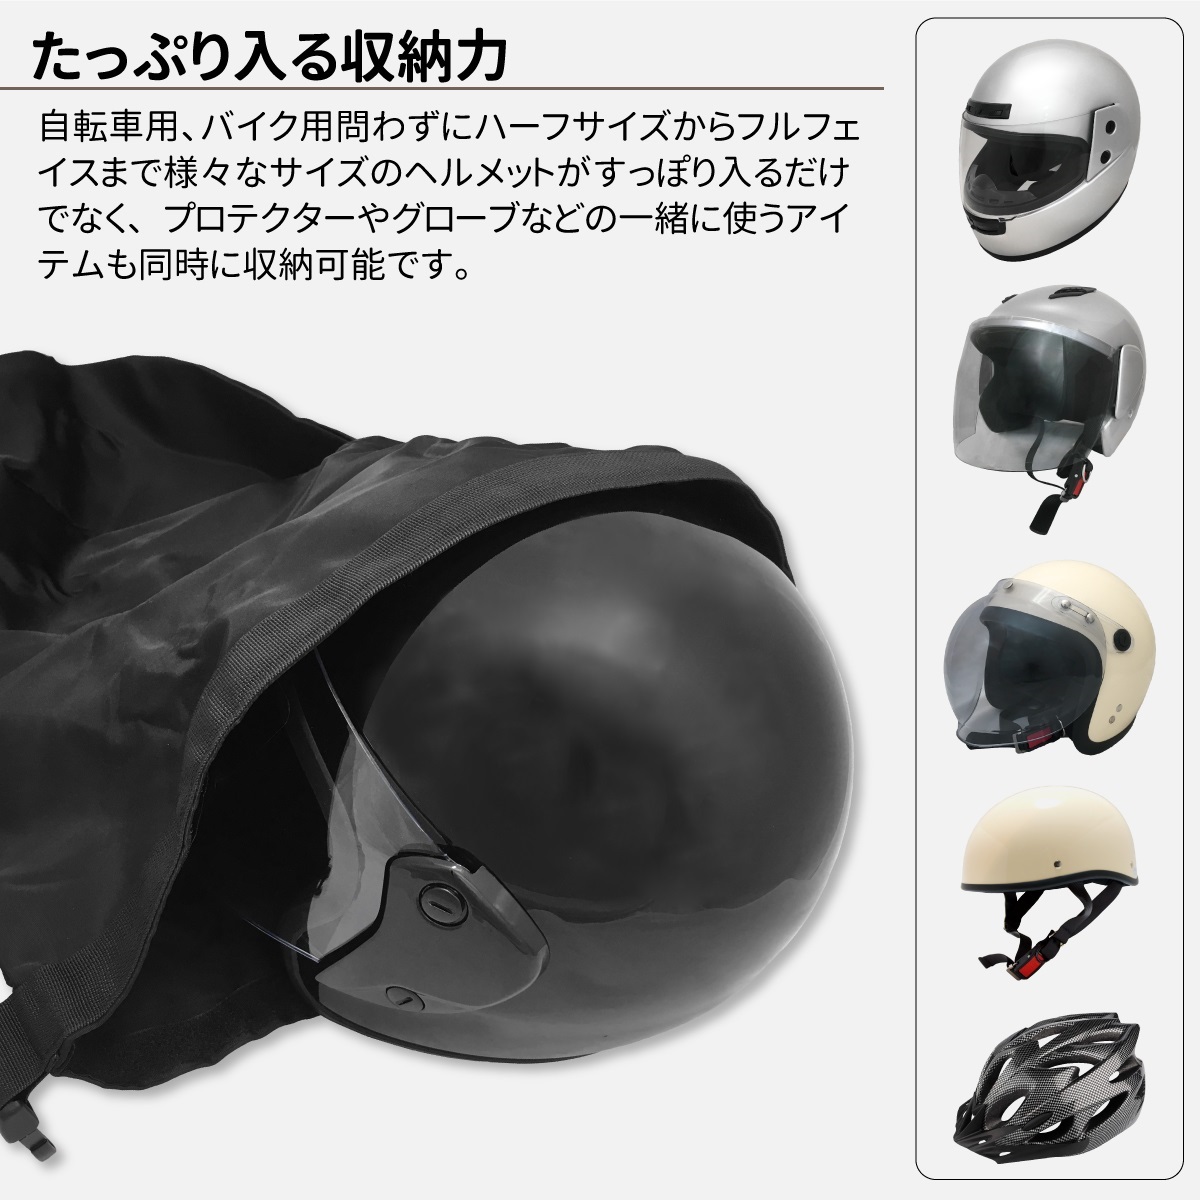  кодовый замок есть шлем сумка защита пакет черный водоотталкивающий гибкий шлем место хранения многоцелевой сумка баскетбол футбол bare- спорт пакет текстильная застёжка эко-сумка 